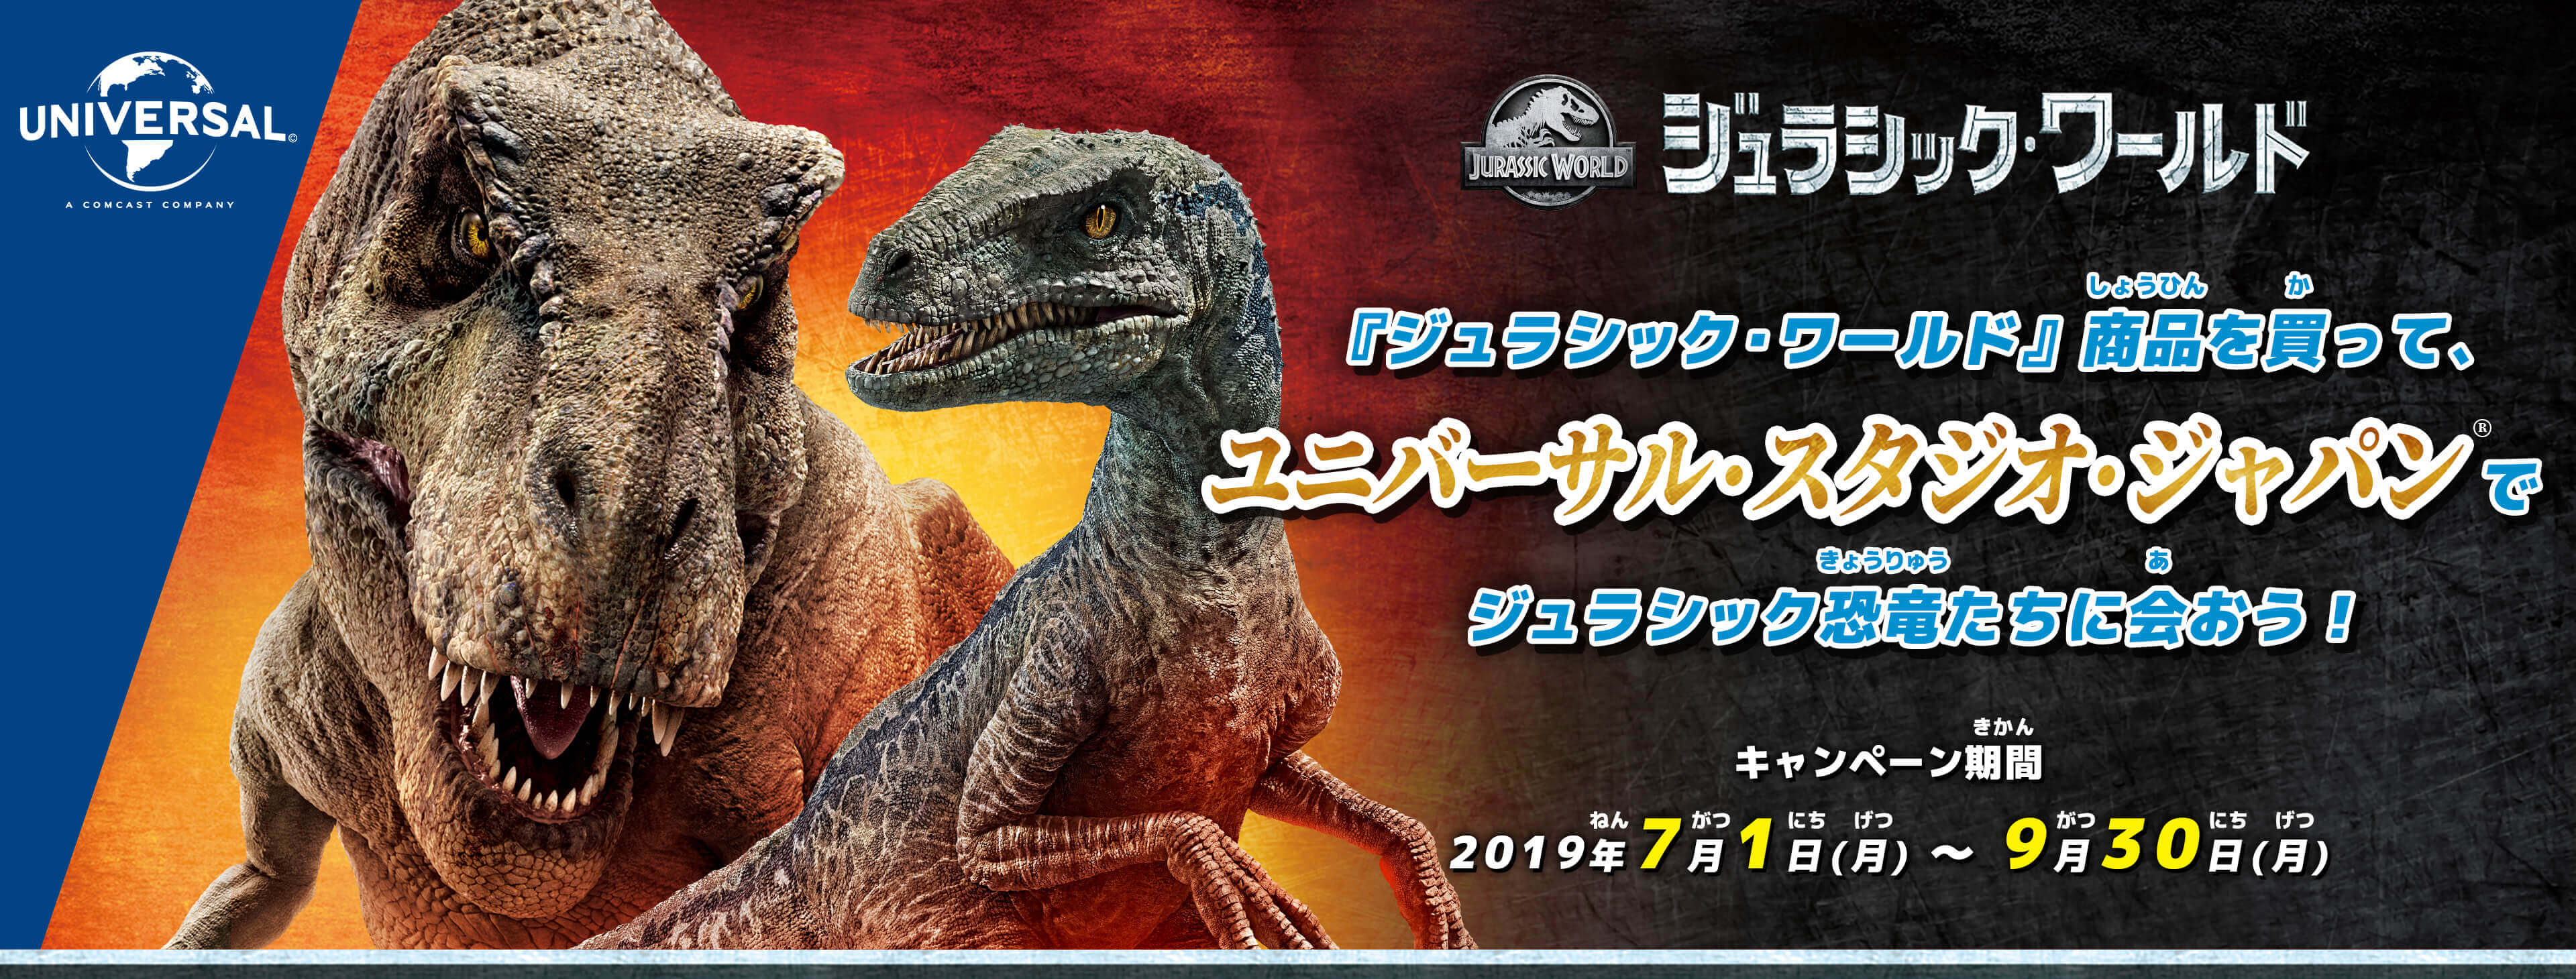 ジュラシック ワールド 商品を買って ユニバーサル スタジオ ジャパンでジュラシック恐竜たちに会おう 19年7月1日 月 9月30日 月